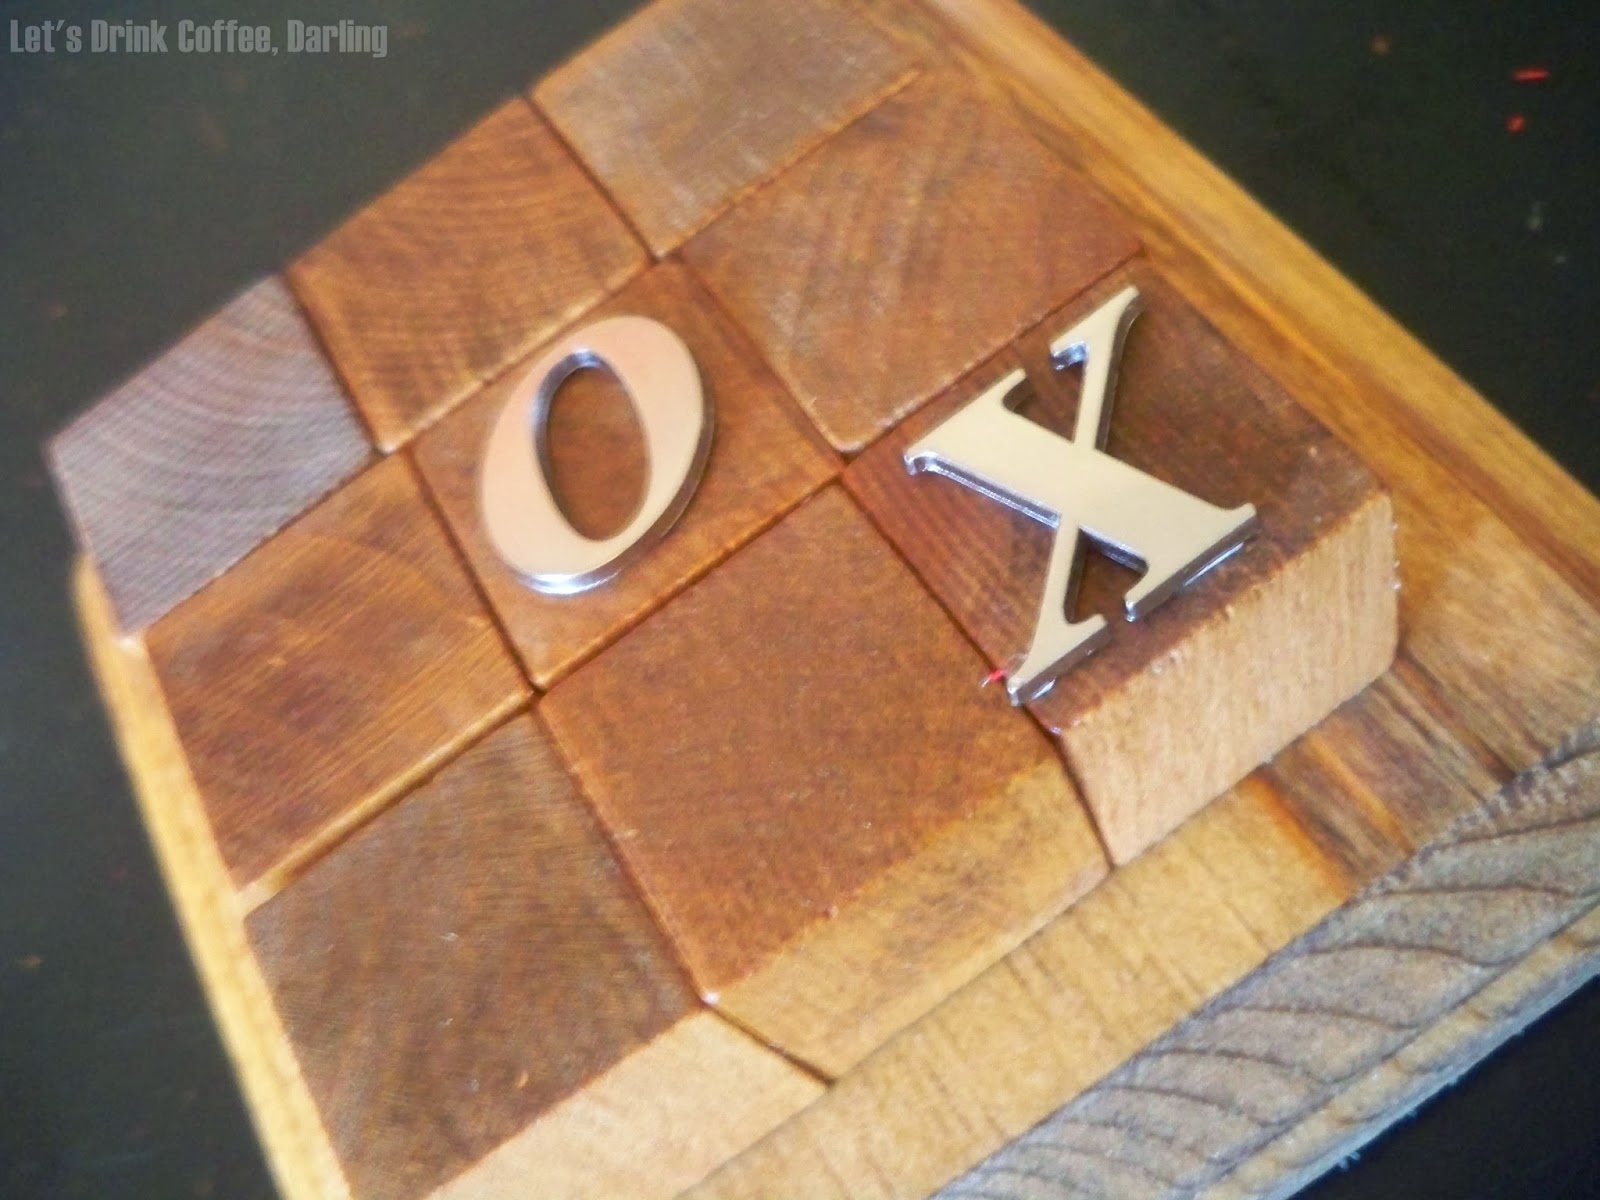 DIY Tic Tac Toe Game from Wood Scraps - DIY Inspired